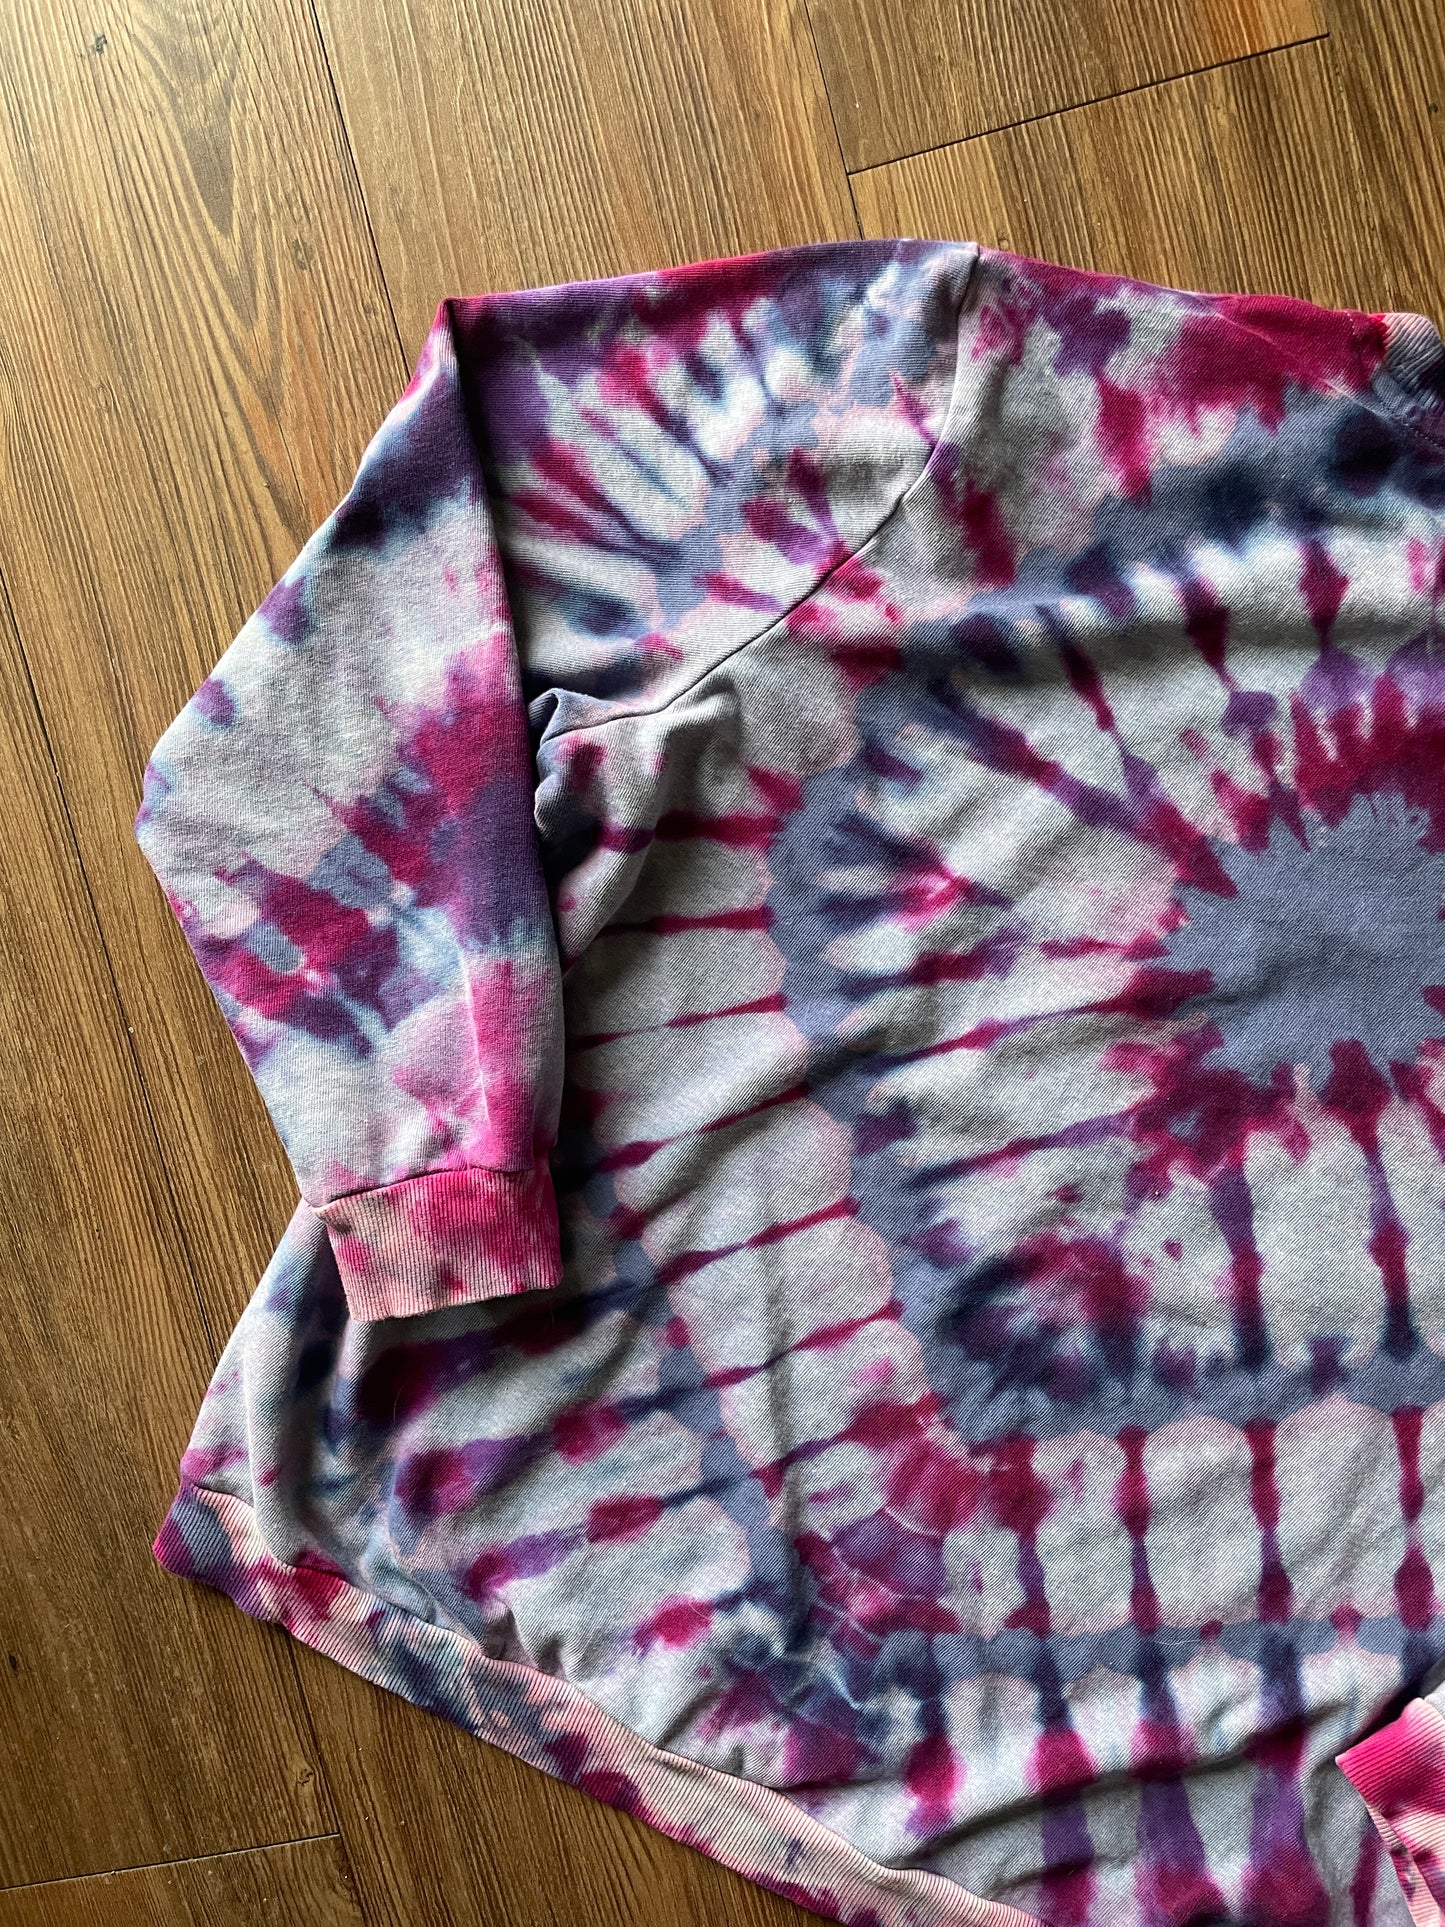 XL Women’s Mountain Palm Tree Tie Dye Lightweight Sweatshirt | Pink, Purple, and Pastel Blue Long Sleeve